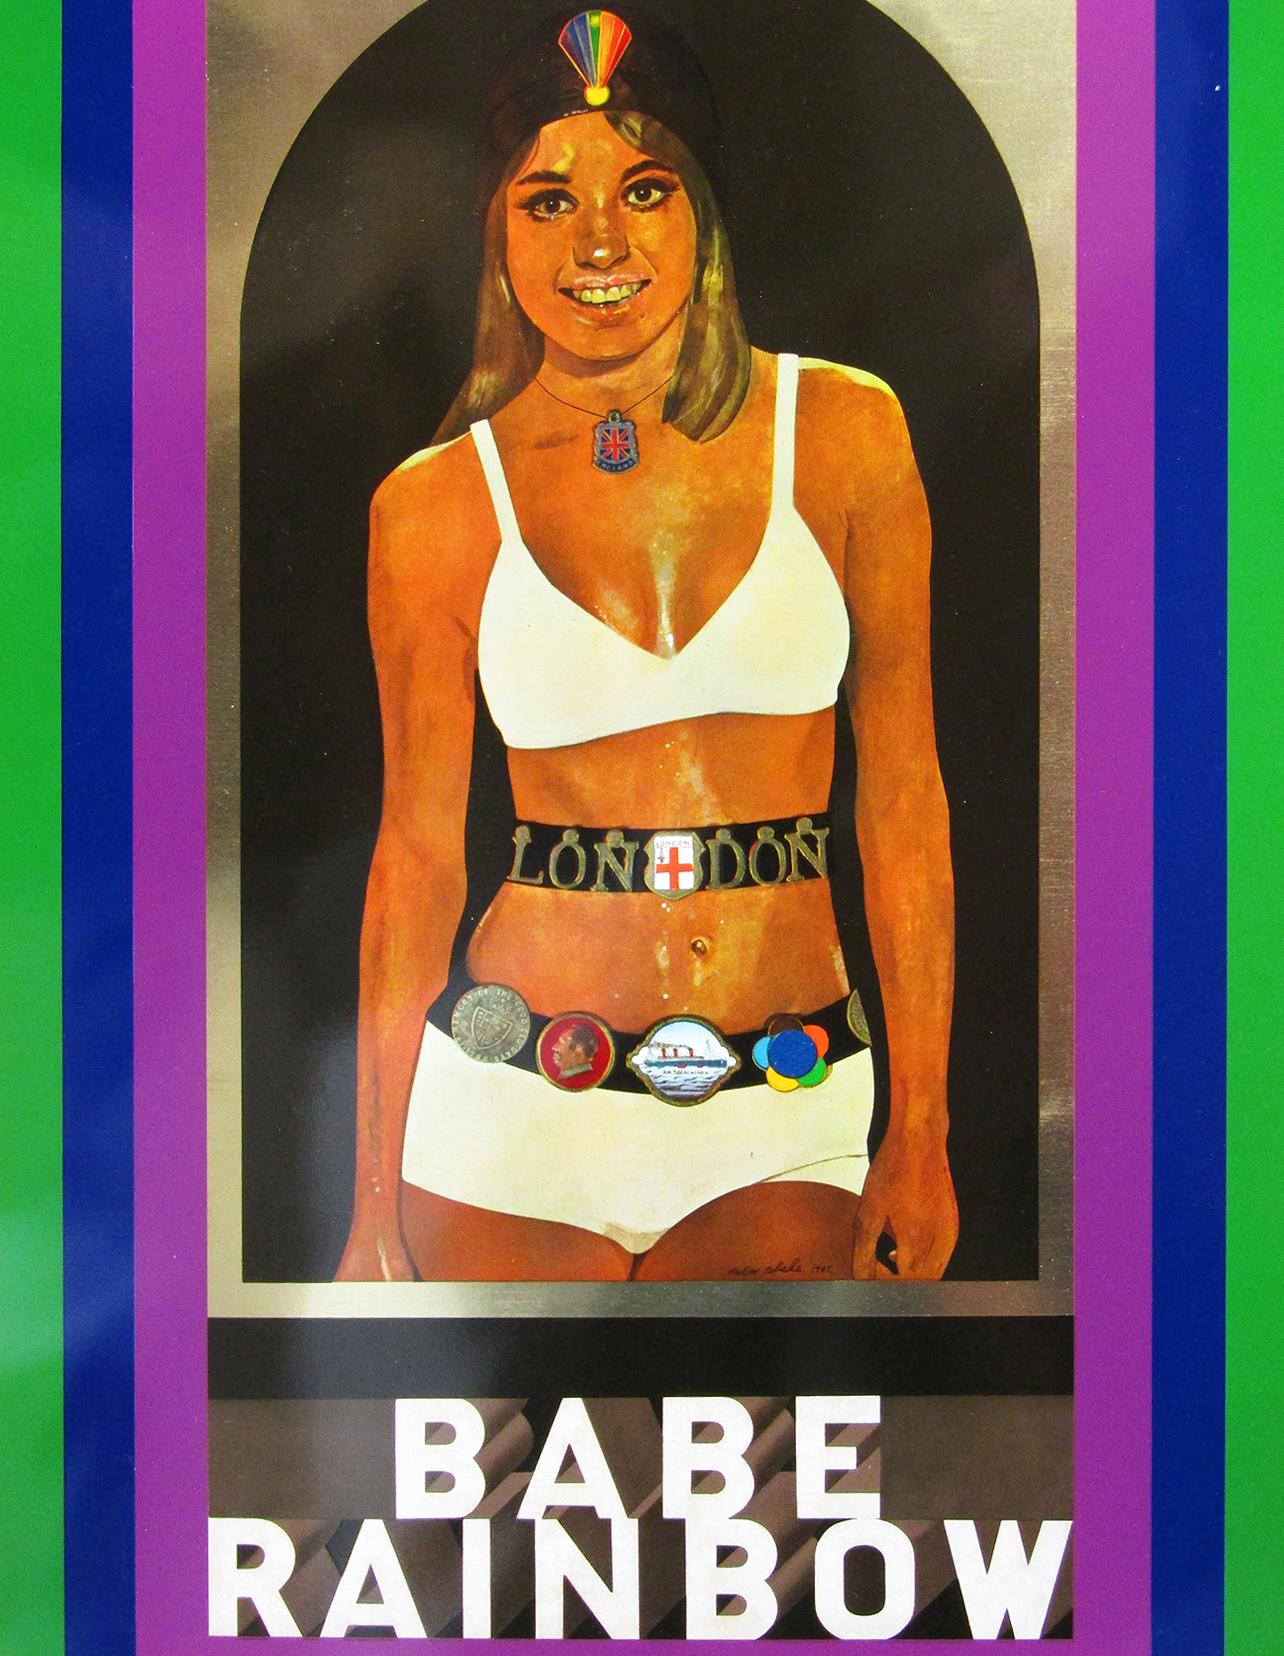 Ein lebendiger Original-Siebdruck von 1968 auf Zinn von Peter Blake RA für Dodo Designs. Es zeigt ein altes Thema aus der Pop-Ära von Blakes Fantasie: Babe Rainbow, die Wrestlerin.

Mit einem sorgfältigen Vorbesitzer, ist dieser Druck in nahezu